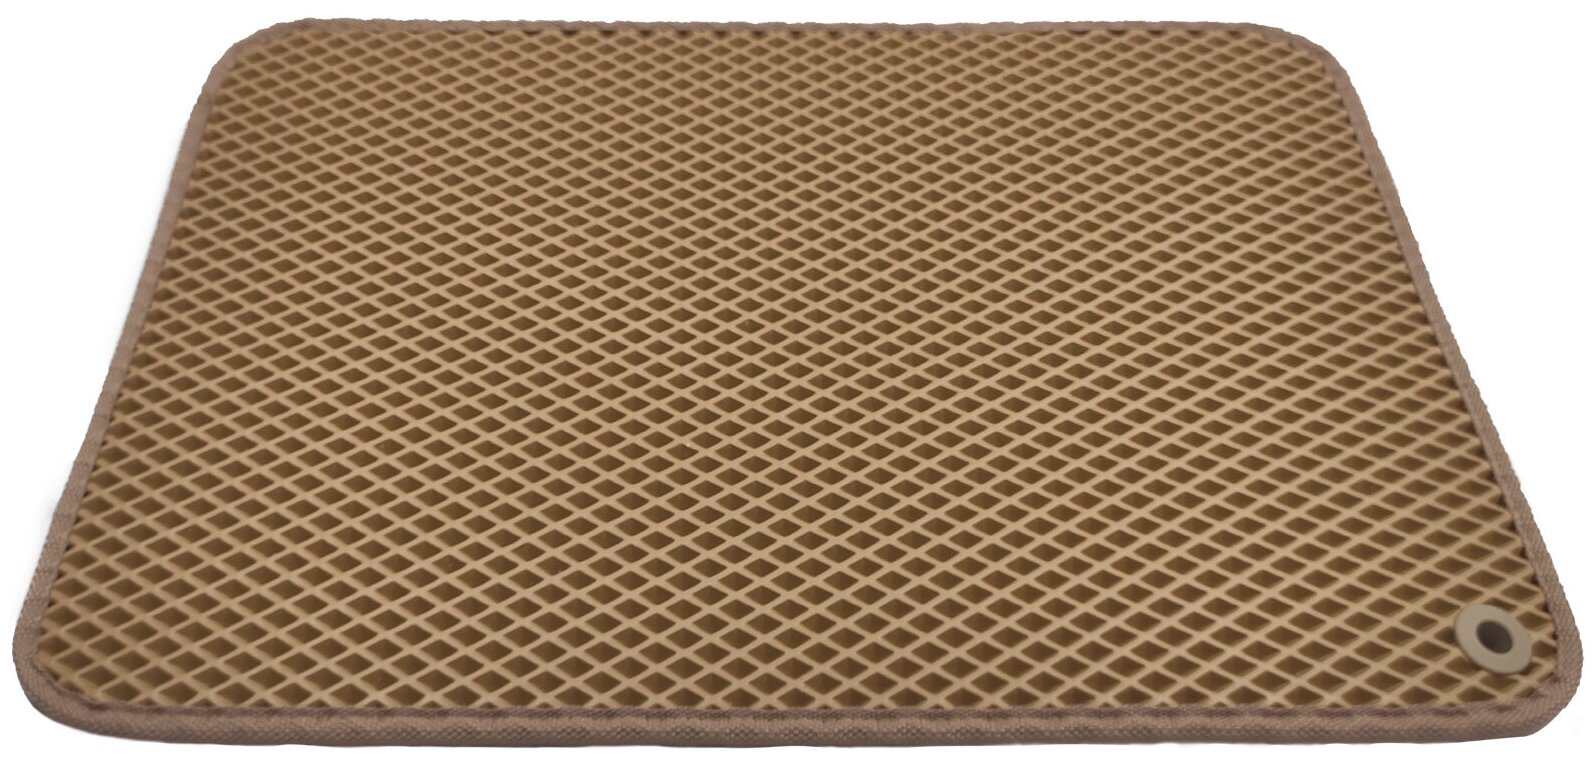 Грязезащитный придверный резиновый коврик в прихожую из EVA для обуви, для ванной, туалета, 0.3 х 0.45 м, бежевый ромб - фотография № 1